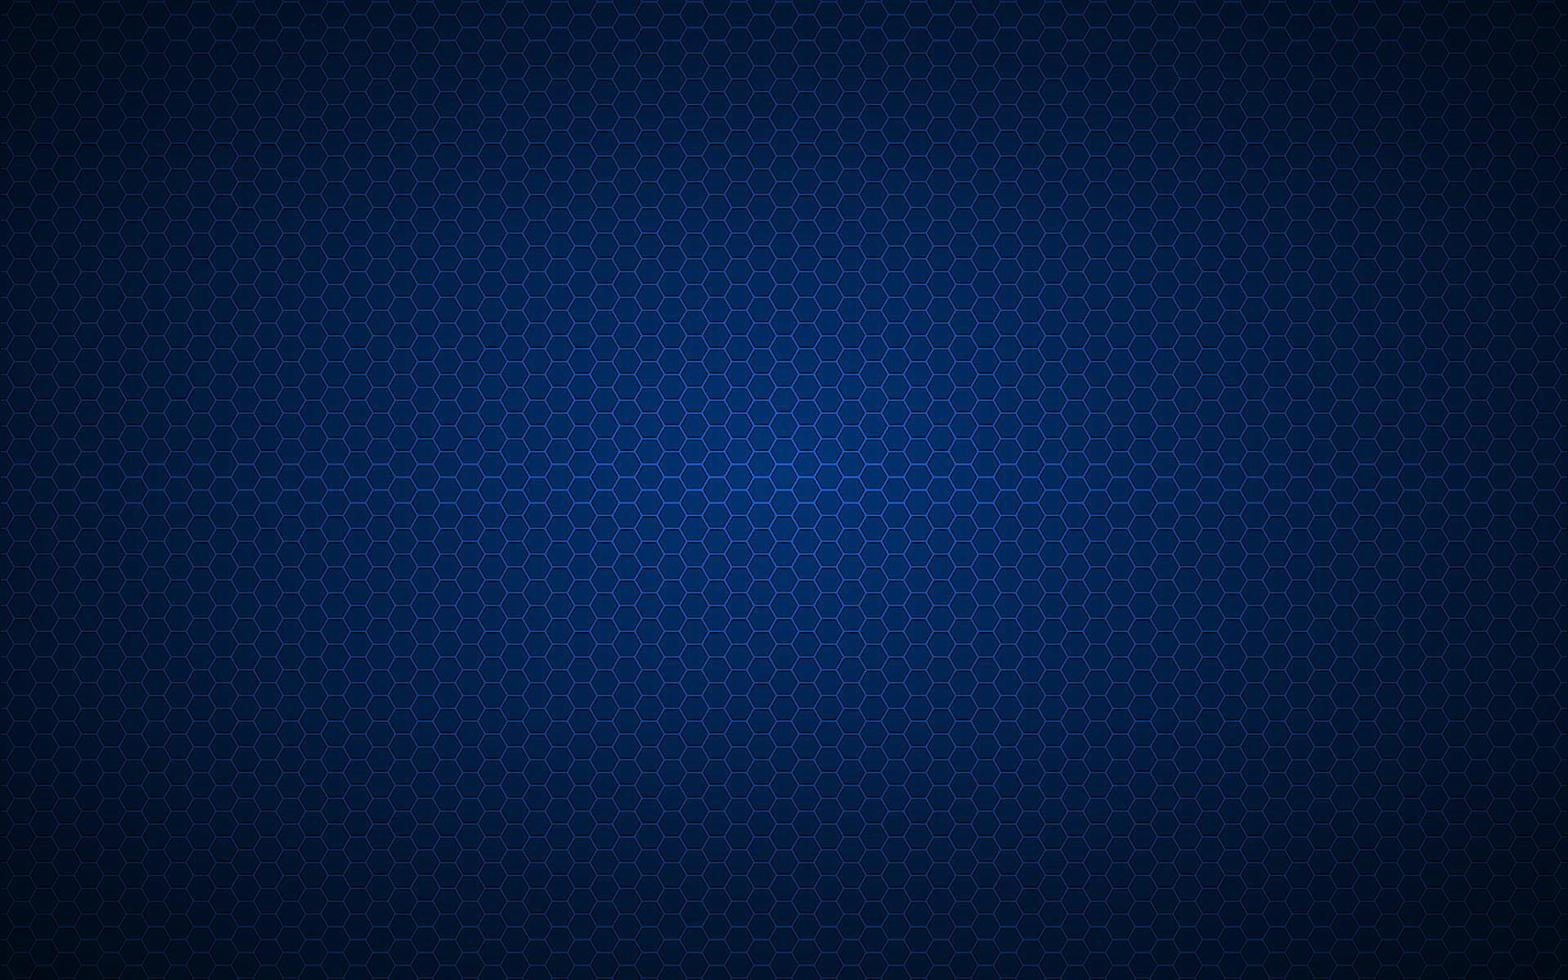 moderno fundo geométrico azul de alta resolução com grade poligonal. padrão hexagonal metálico preto abstrato. ilustração vetorial simples vetor